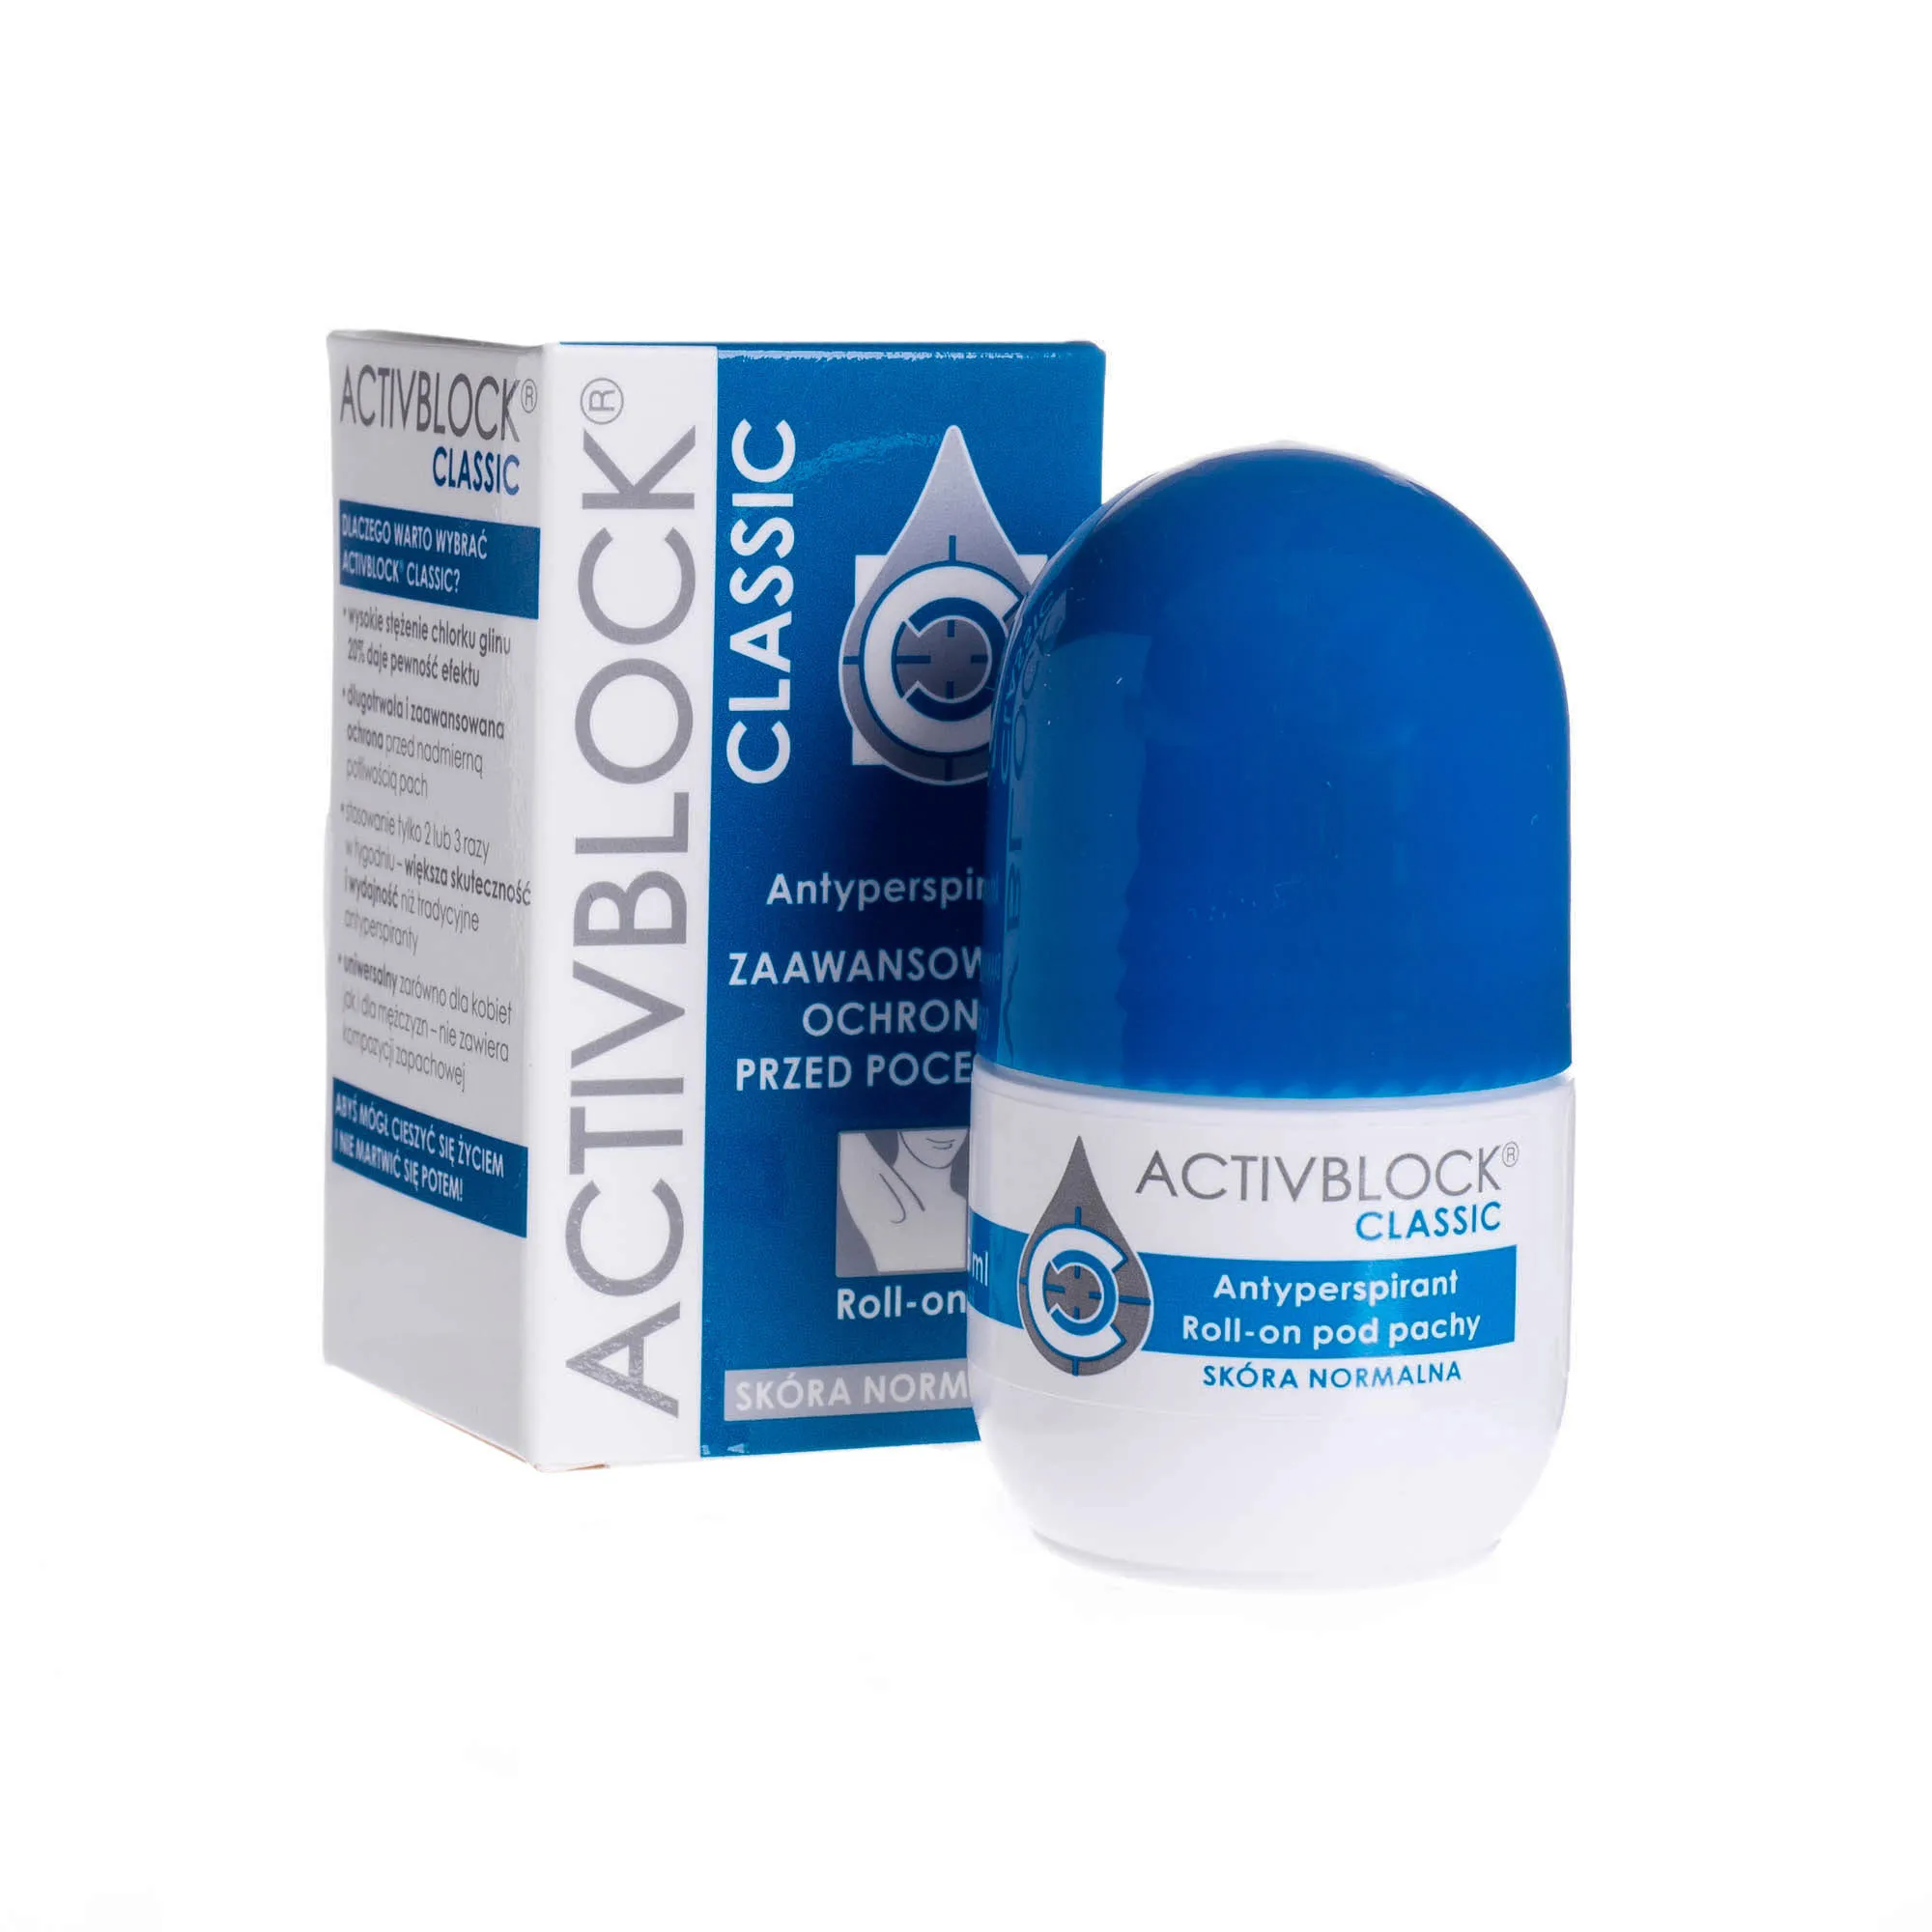 ActivBlock Classic - antyperspirant z zaawansowaną ochroną przed poceniem, roll-on 